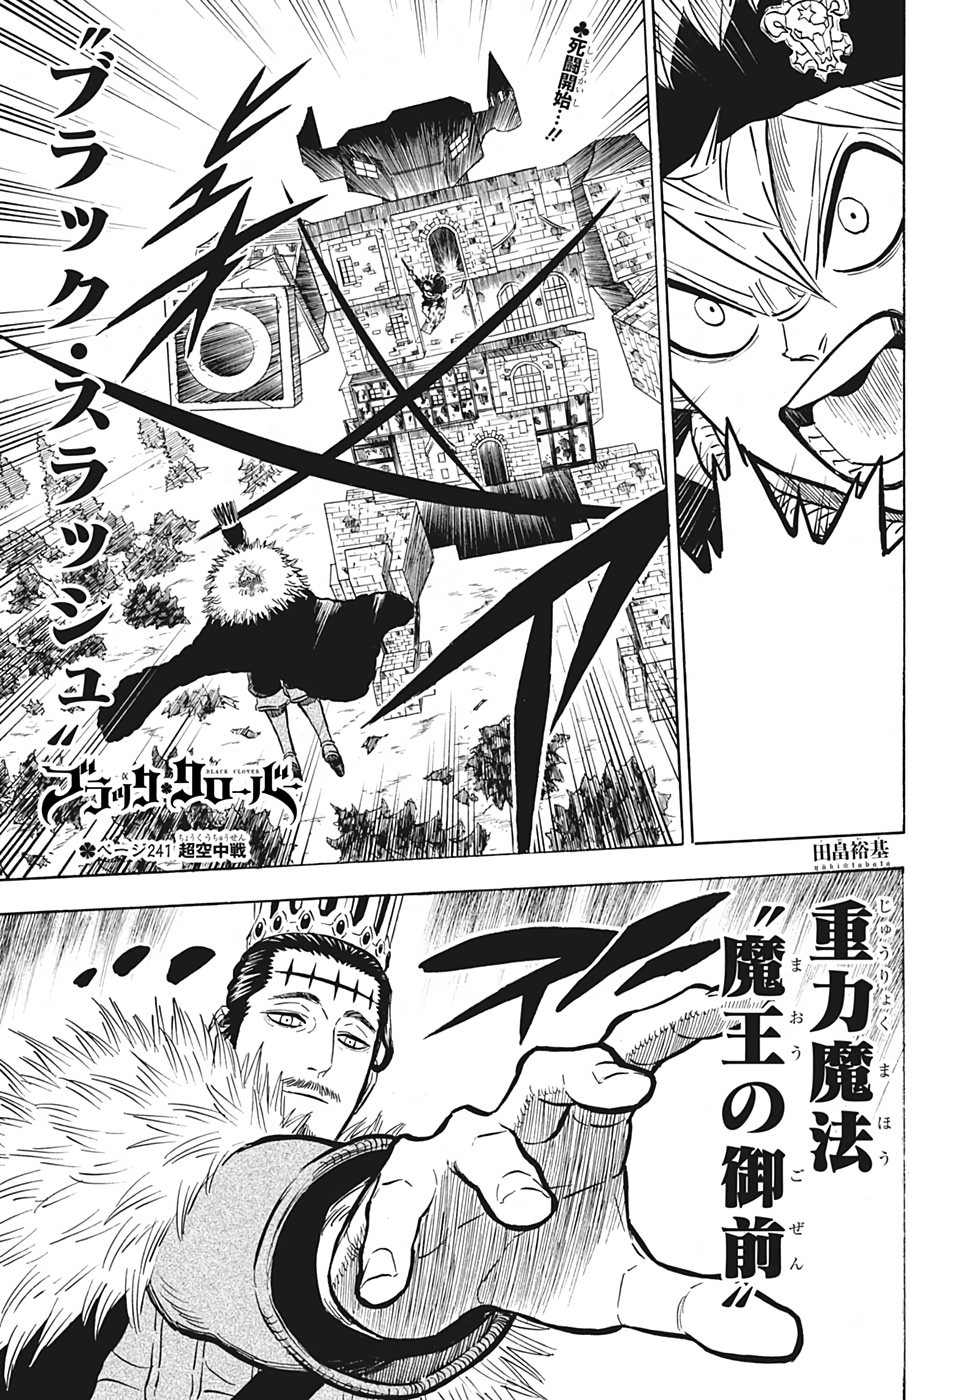 Featured image of post Asta Black Meteorite Manga Hola a todos hoy os traigo un v deo comparando la pelea de asta vs ladros tanto en el manga como el anime